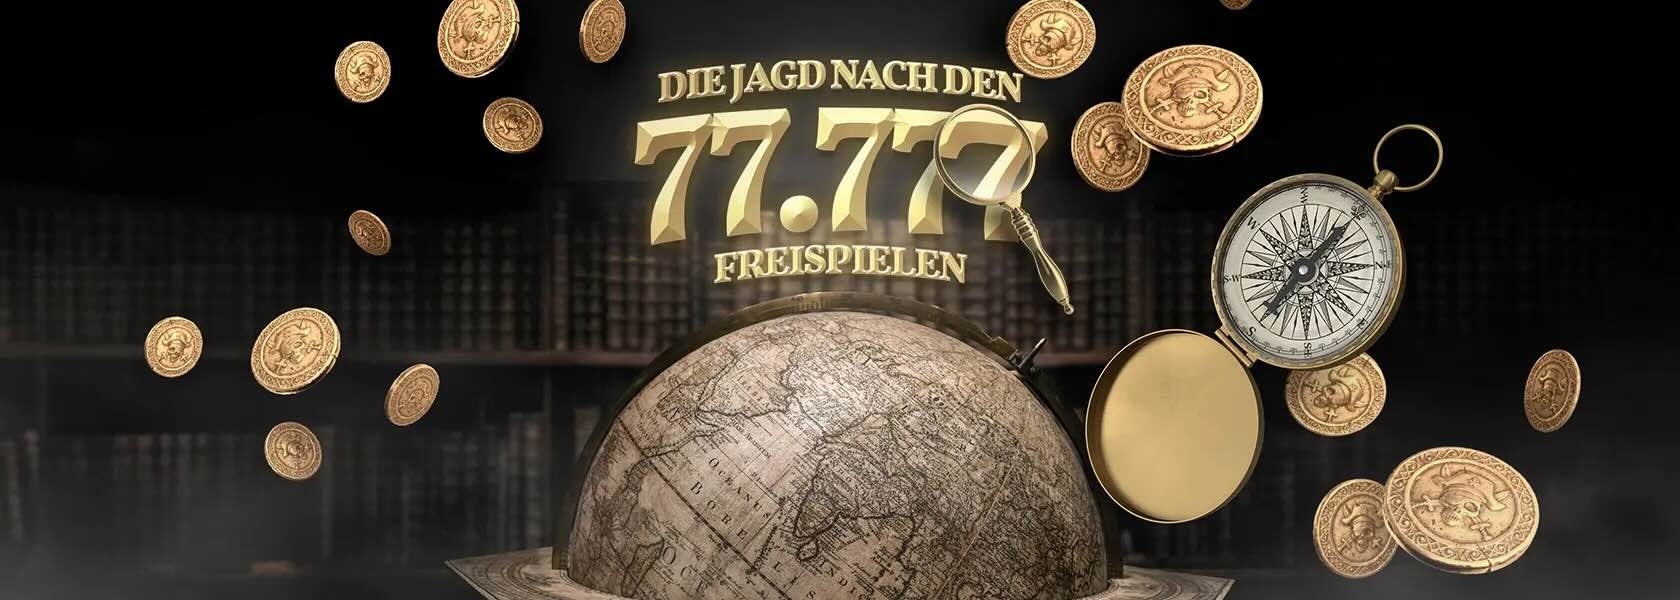 jagd-nach-den-77777-freispielen-20042024